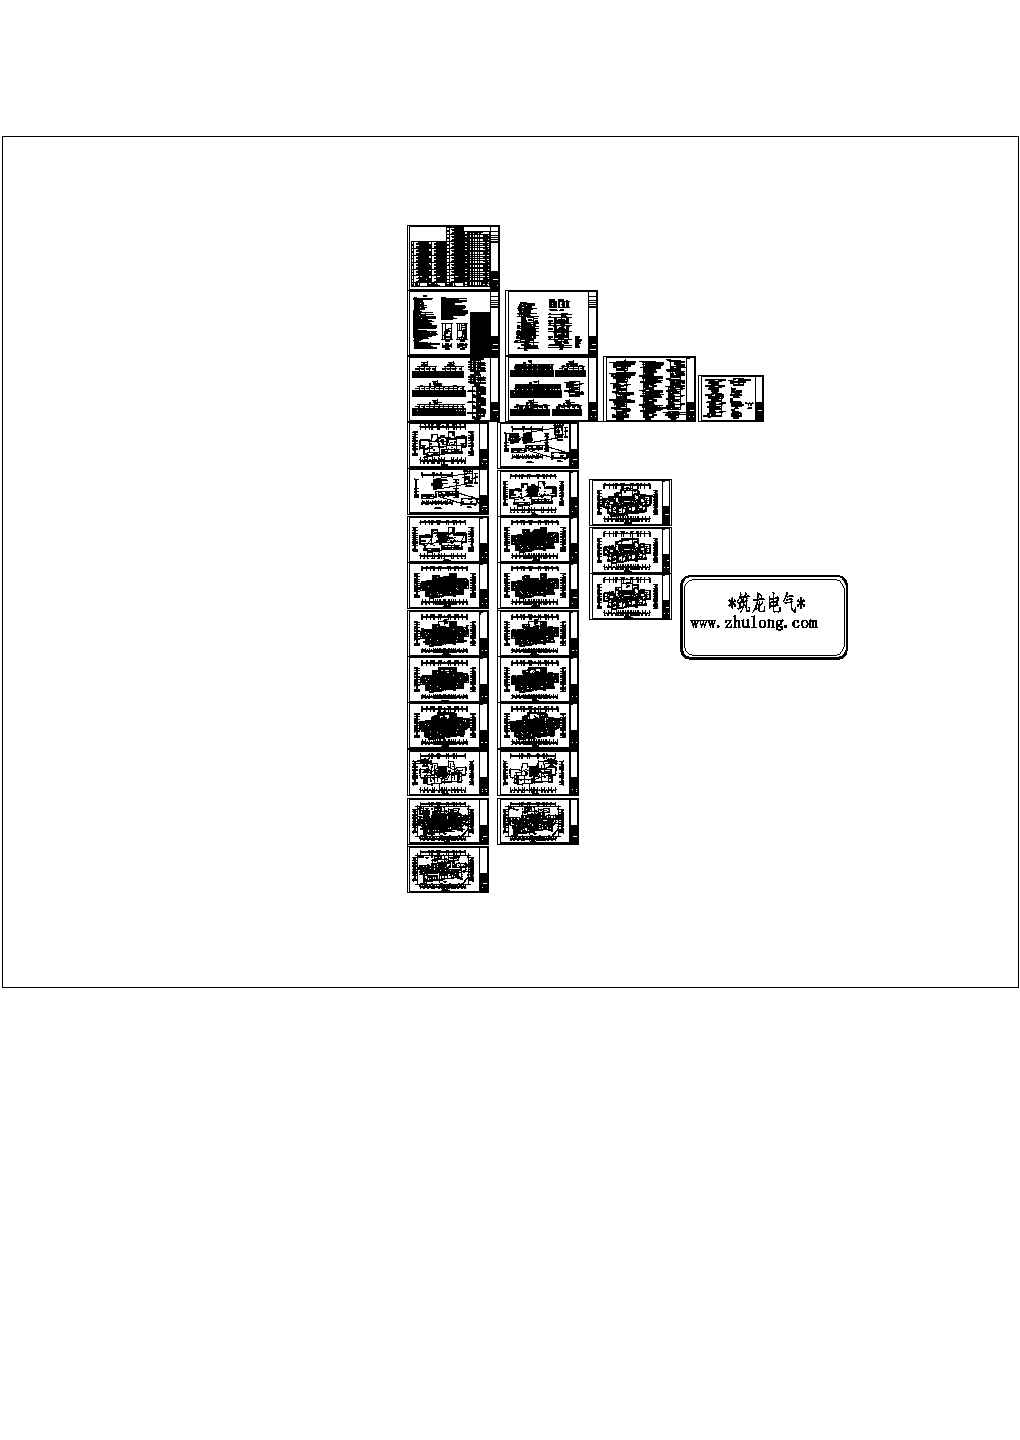 32层住宅楼全套电气cad施工图